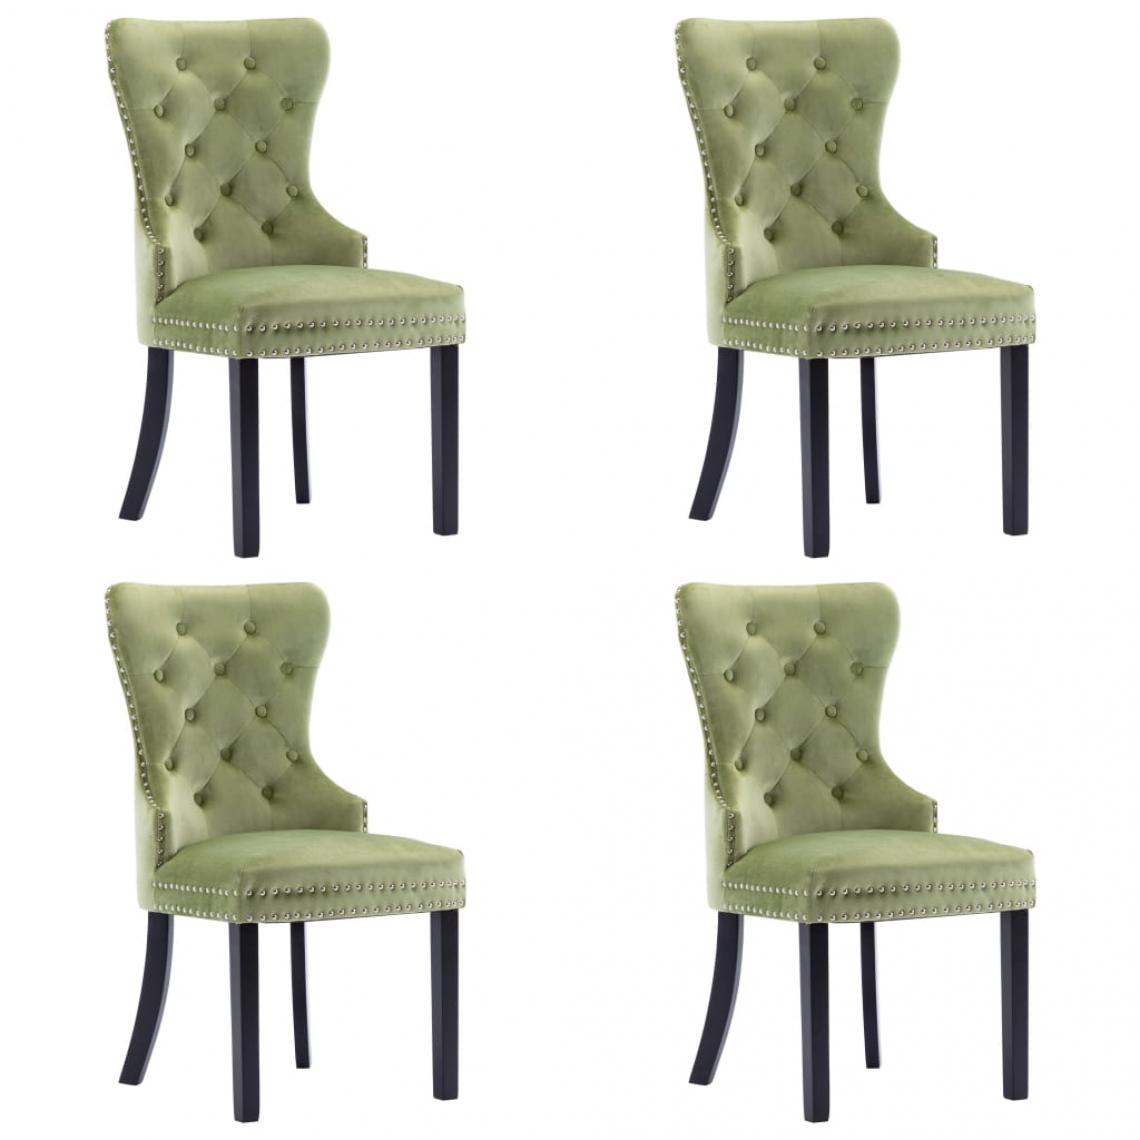 Decoshop26 - Lot de 4 chaises de salle à manger cuisine design classique velours vert clair CDS022016 - Chaises